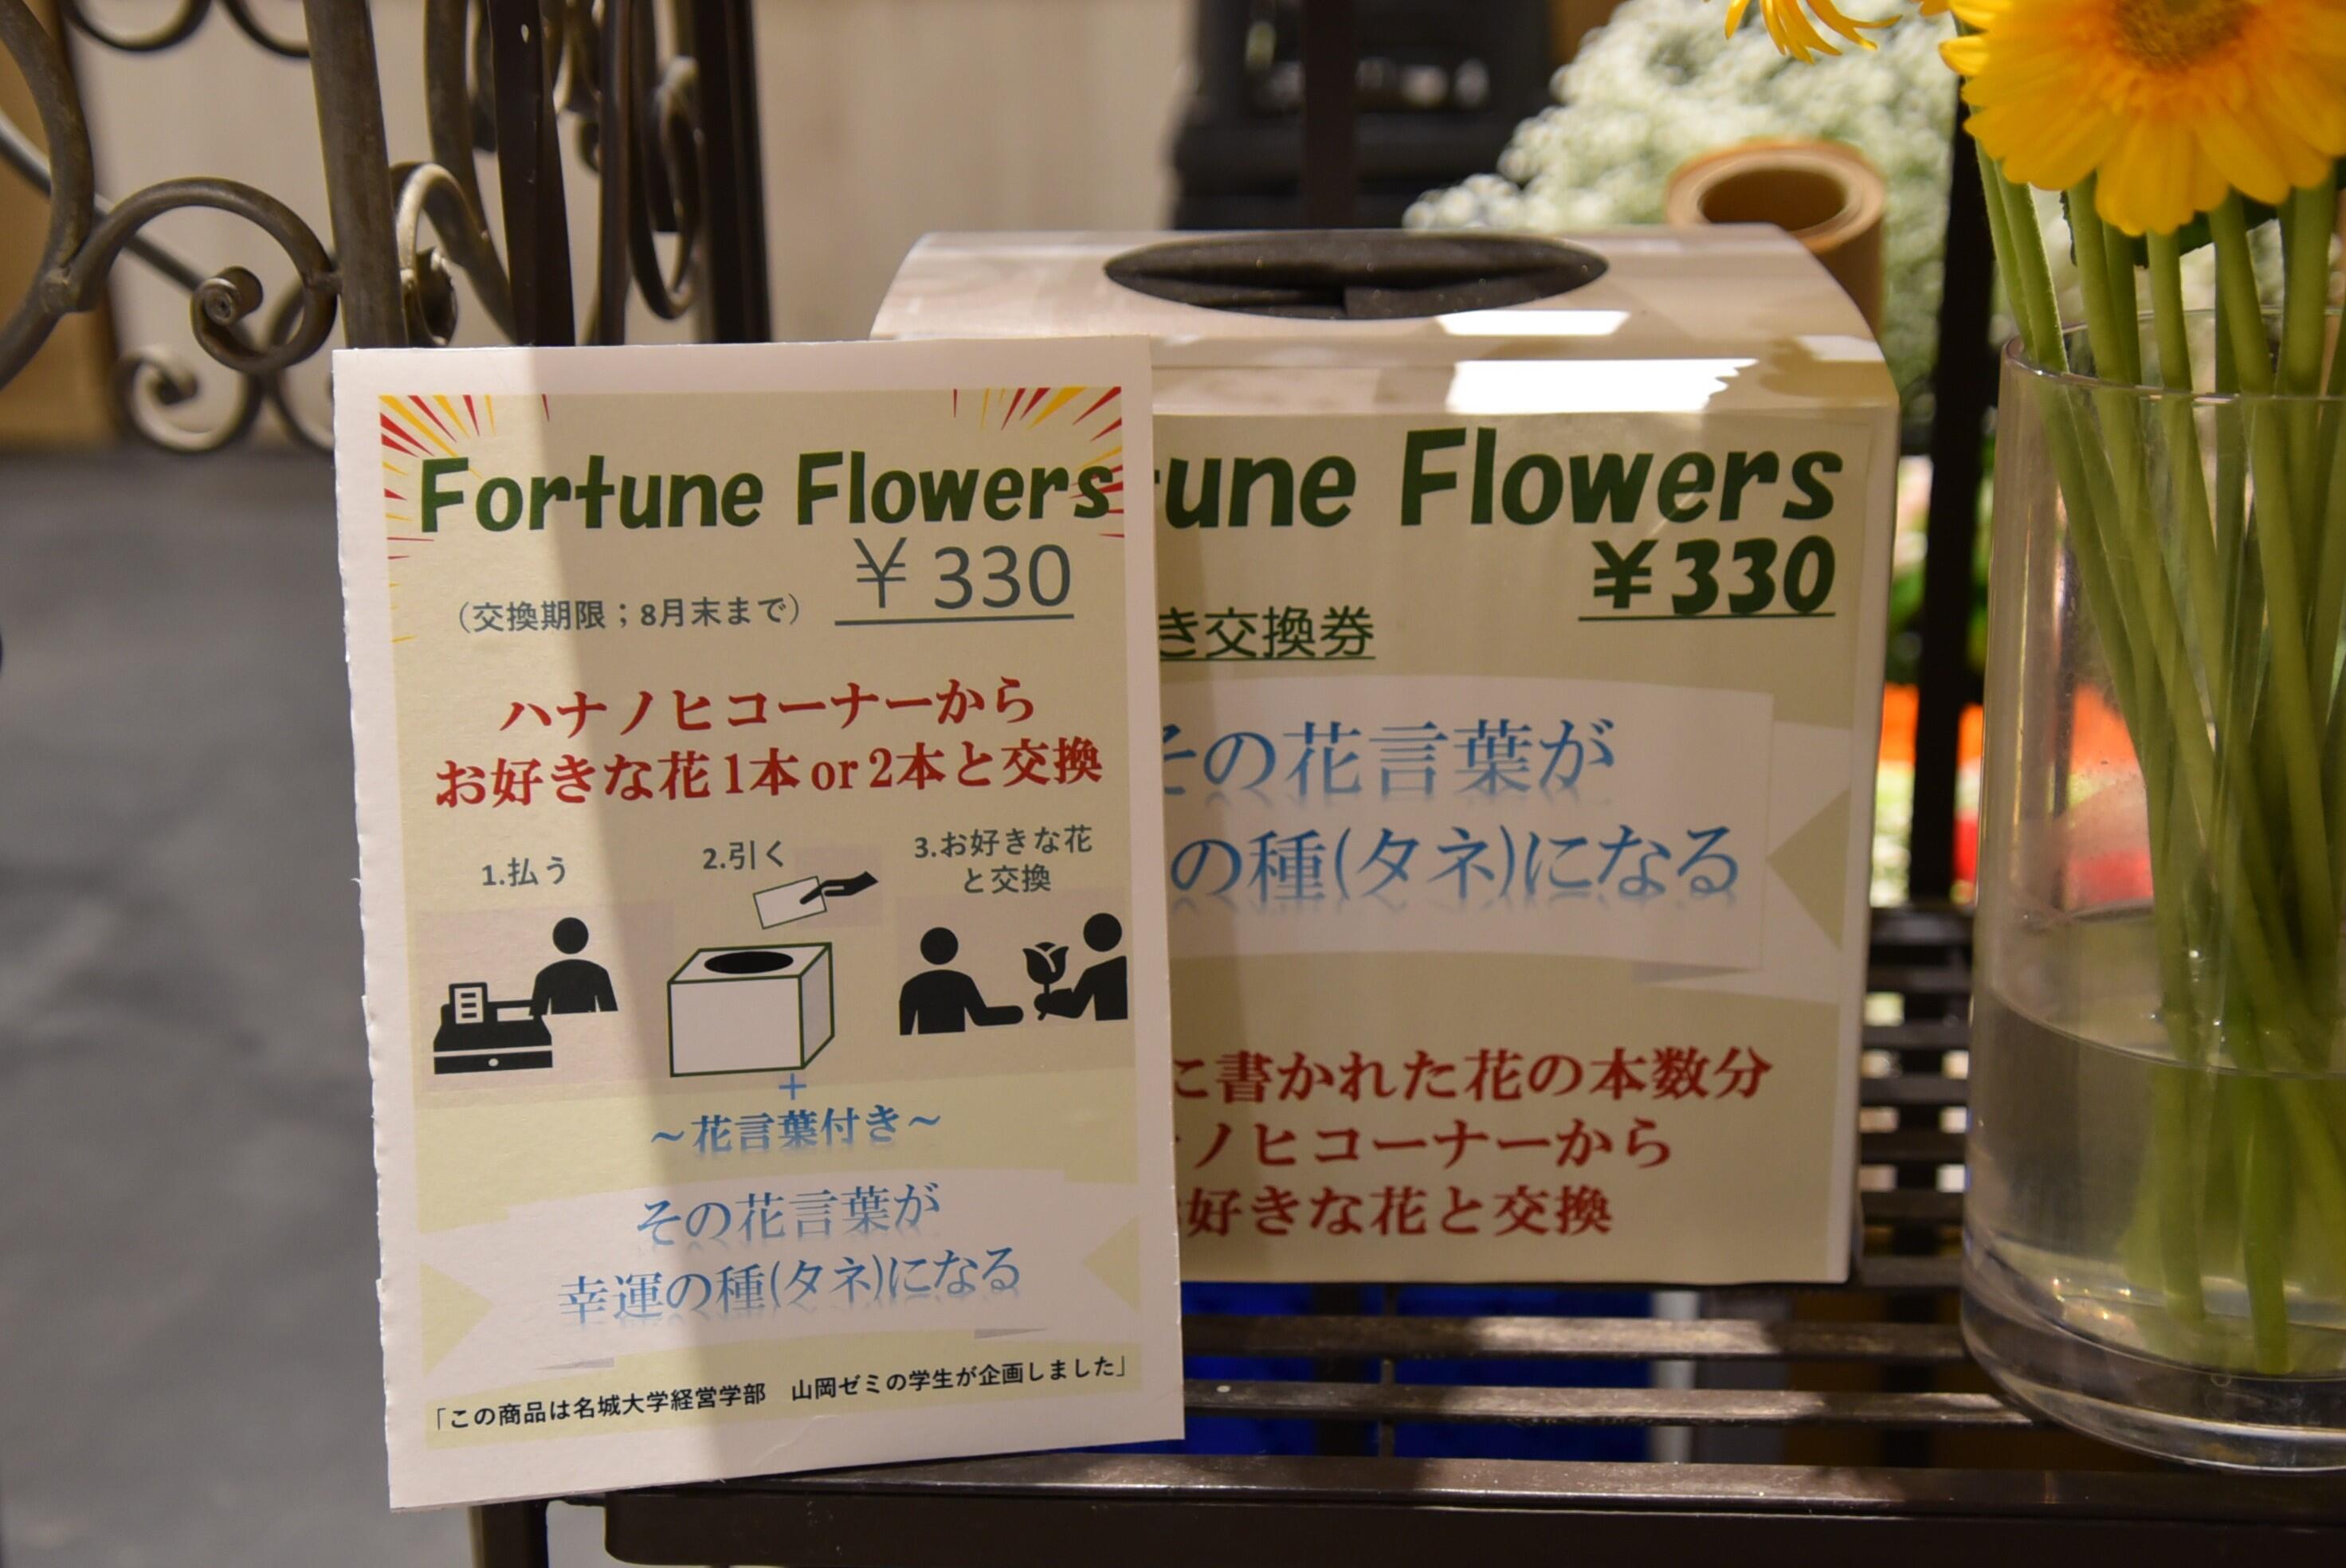 新商品「Fortune Flowers」